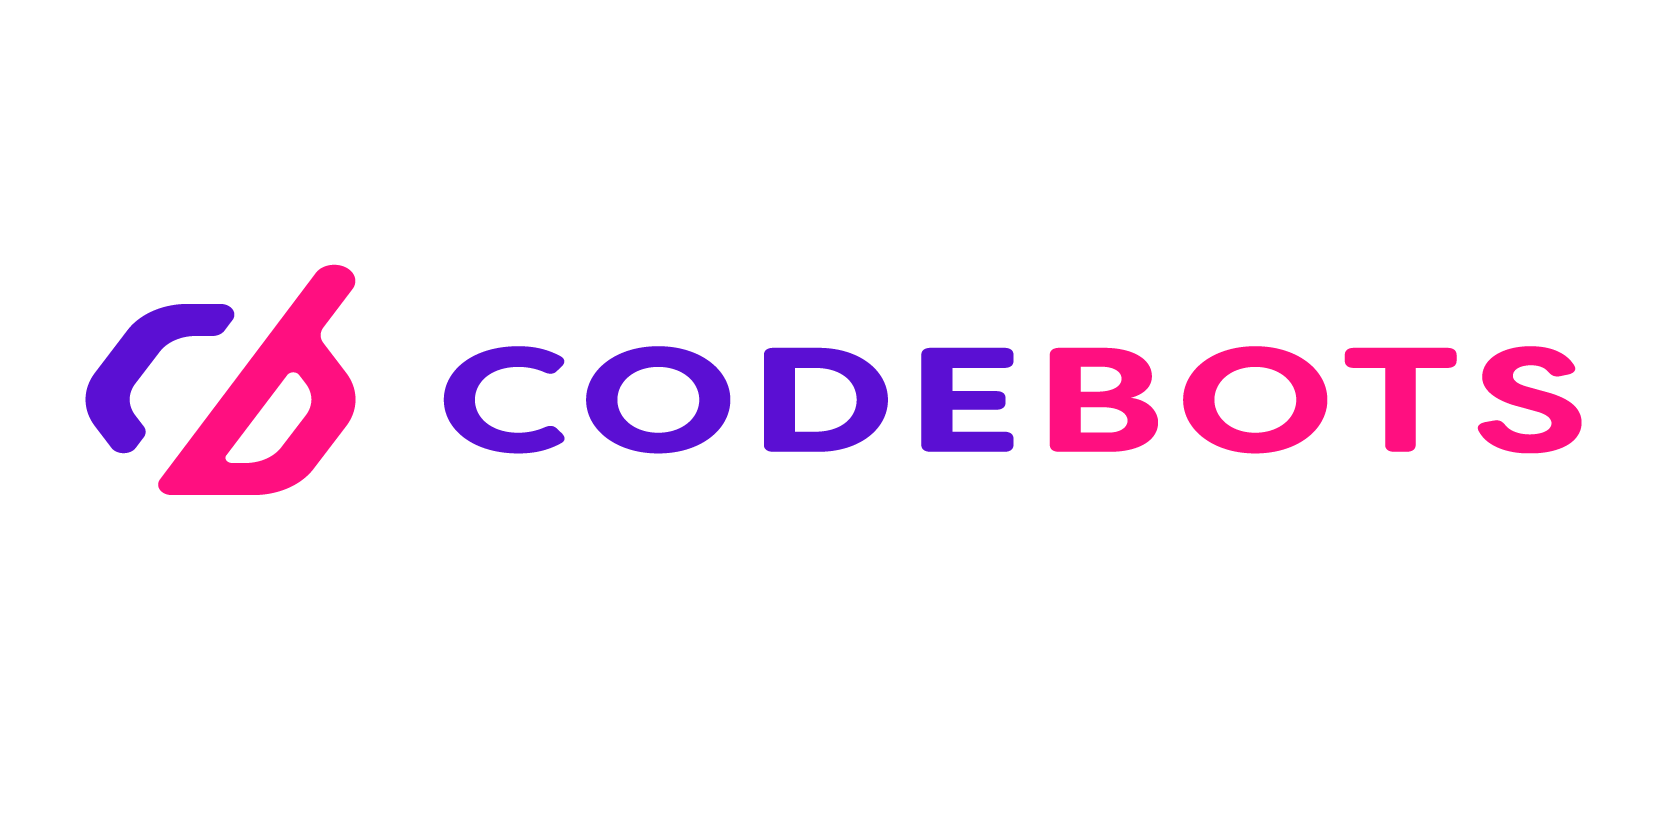 Codebots resize logo